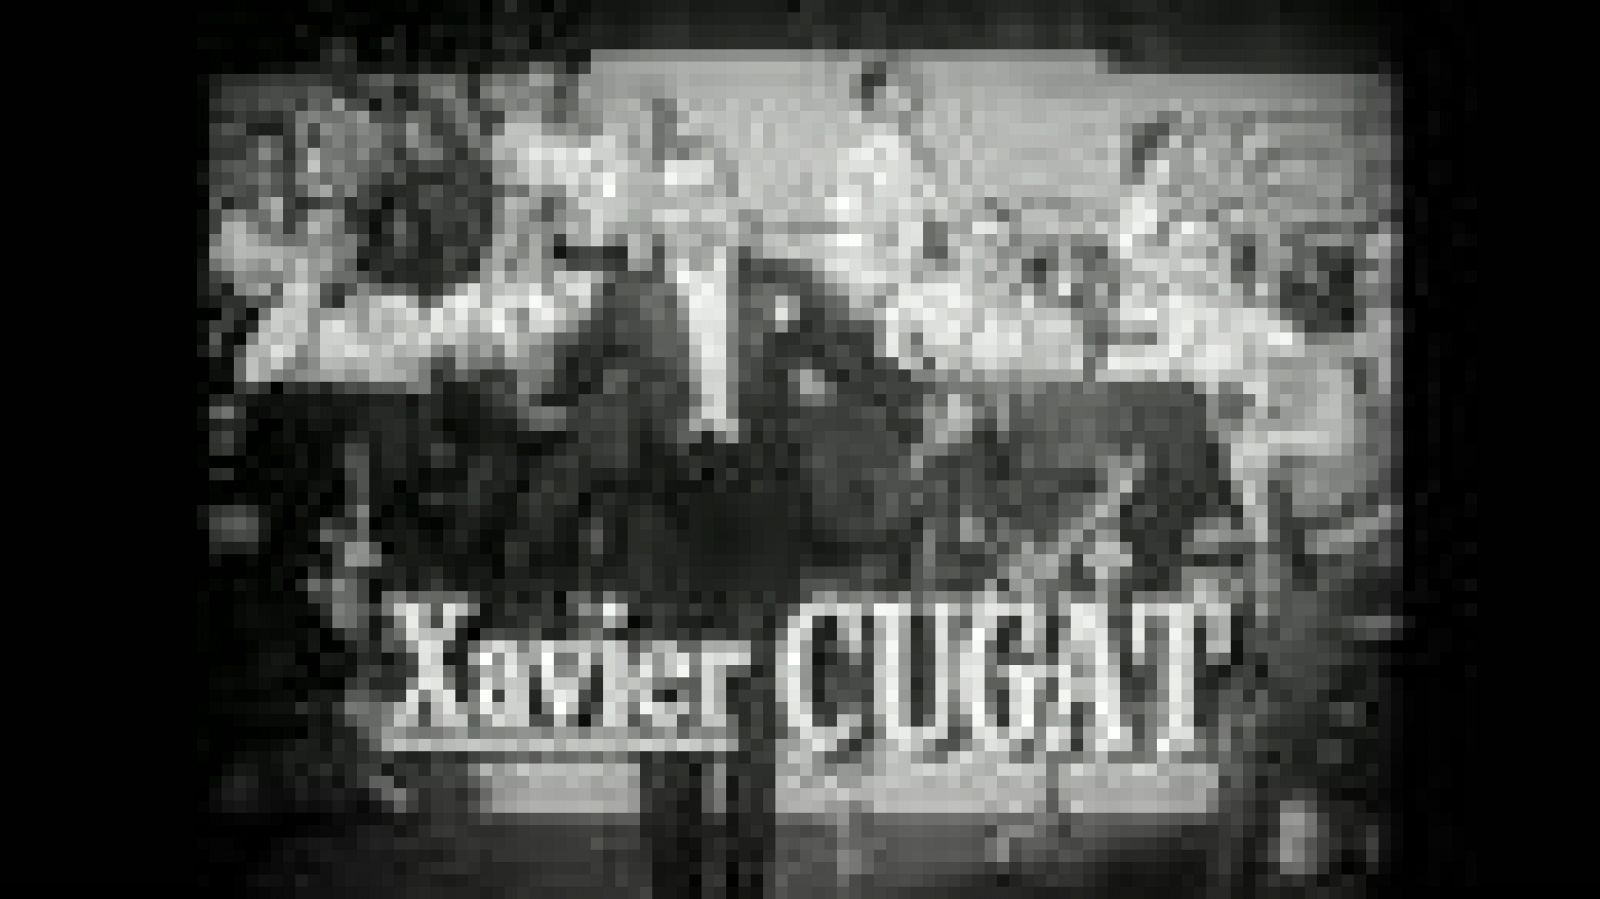 Imprescindibles: Xavier Cugat "Sexo, maracas y chihuahuas" - trailer | RTVE Play